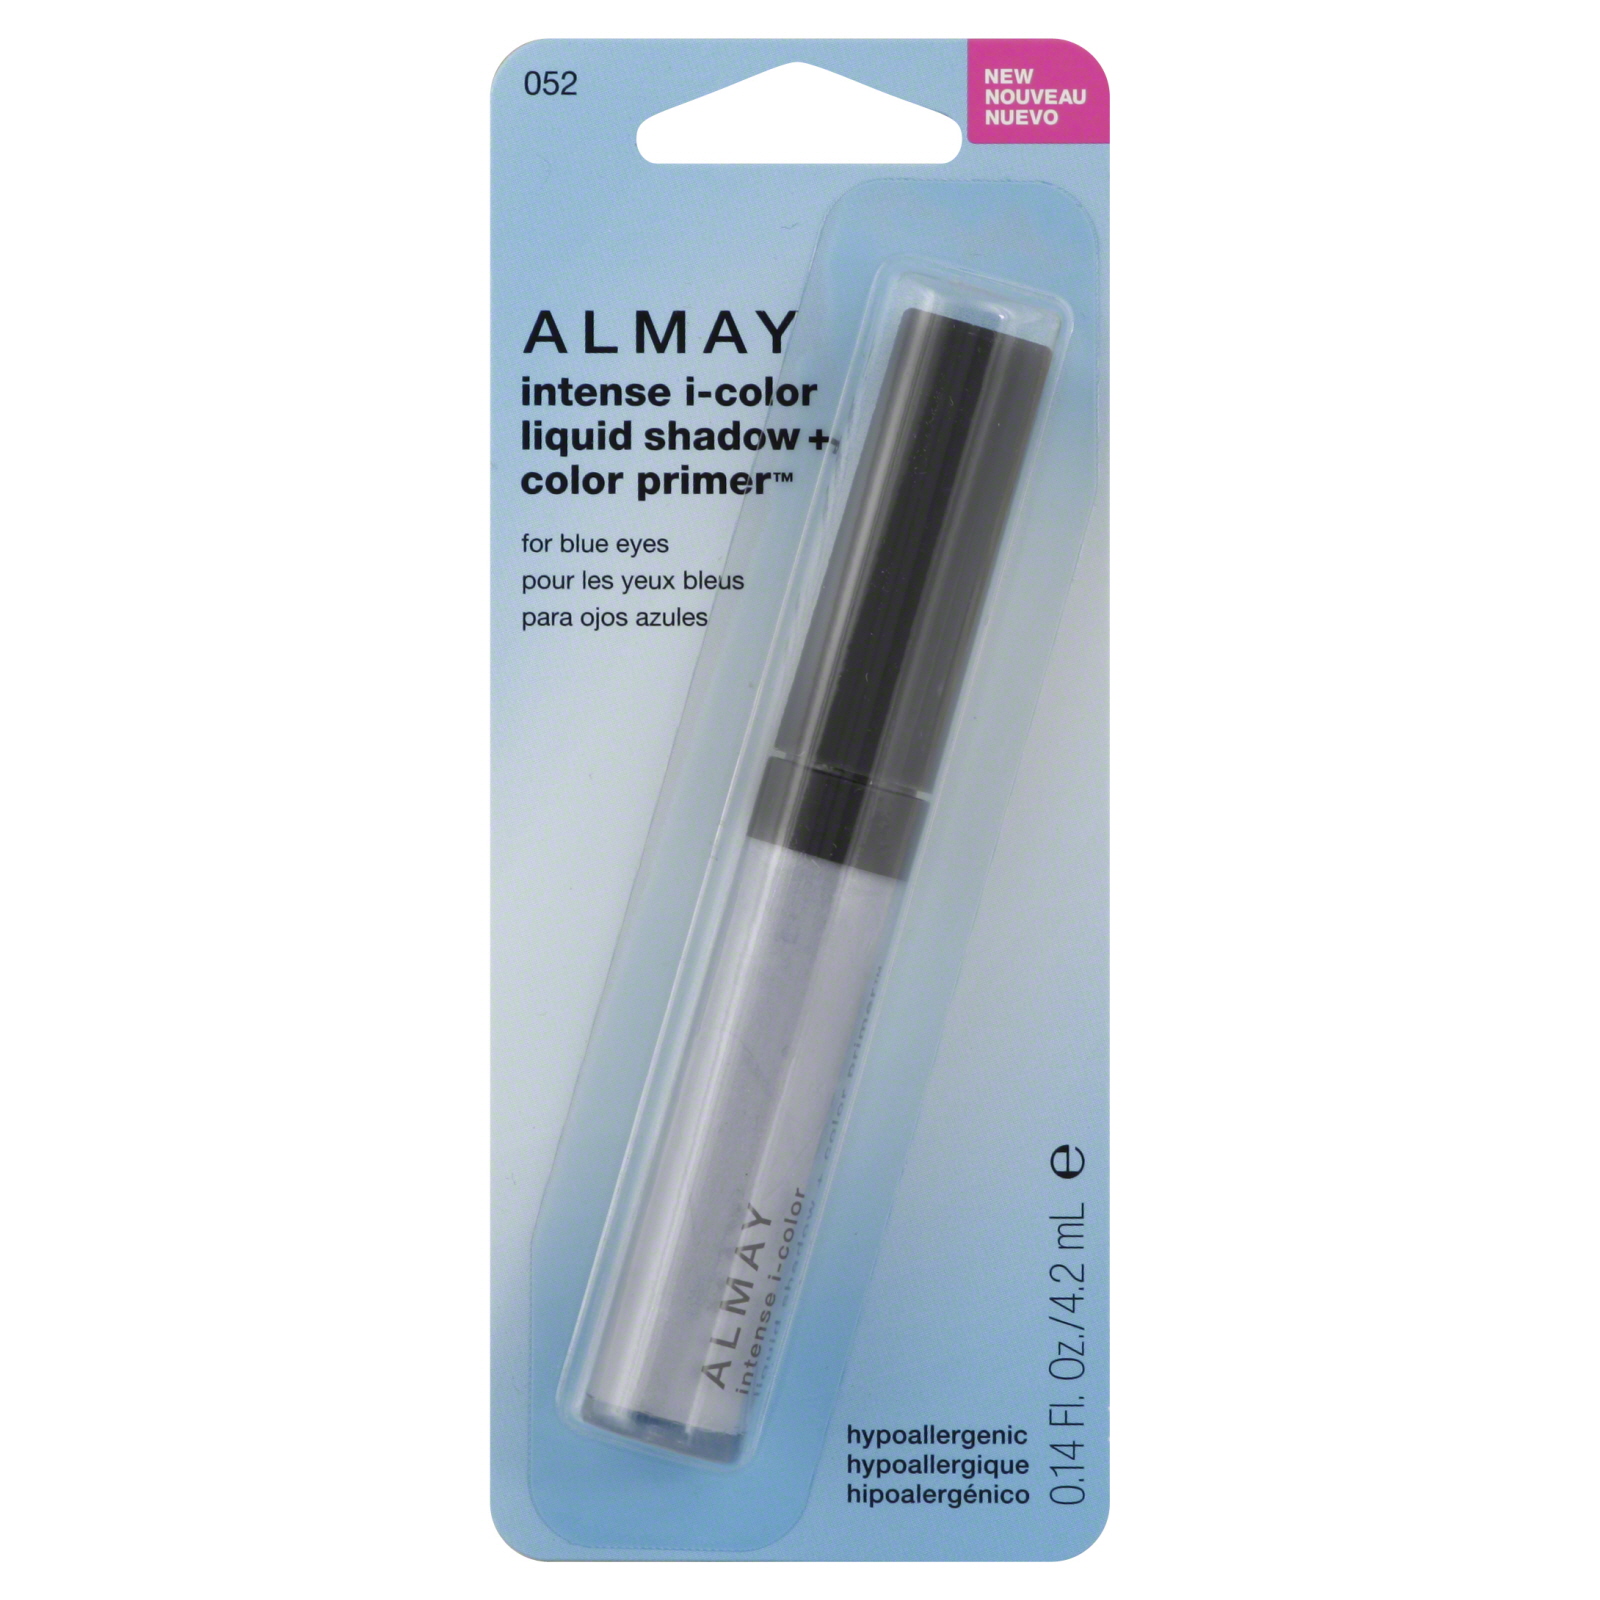 Almay Intense I-Color Liquid Eyeshadow + Clear Primer For Blue Eyes, 0.14 fl oz